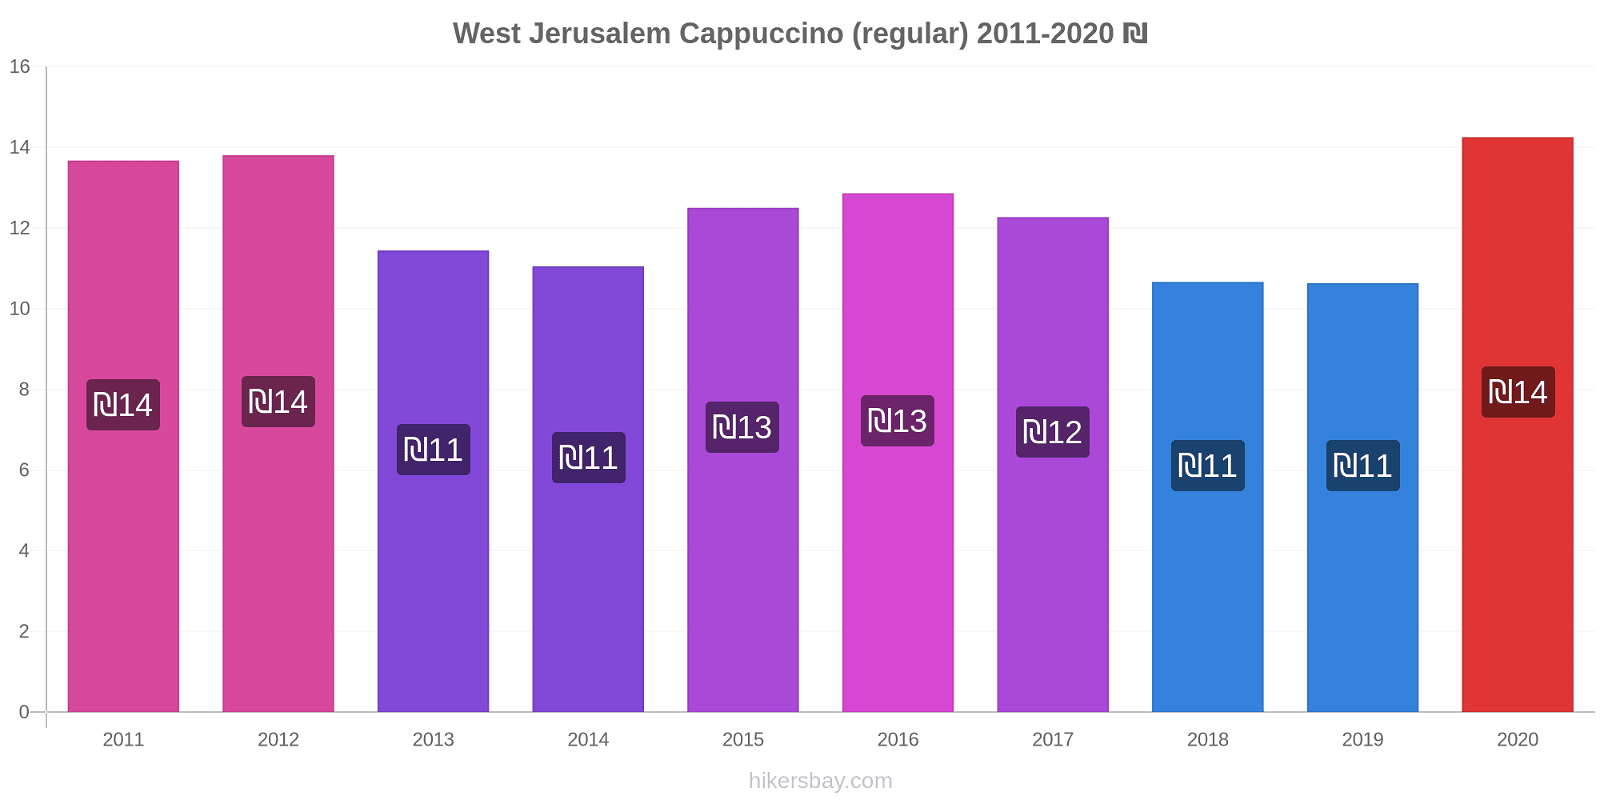 West Jerusalem price changes Cappuccino (regular) hikersbay.com